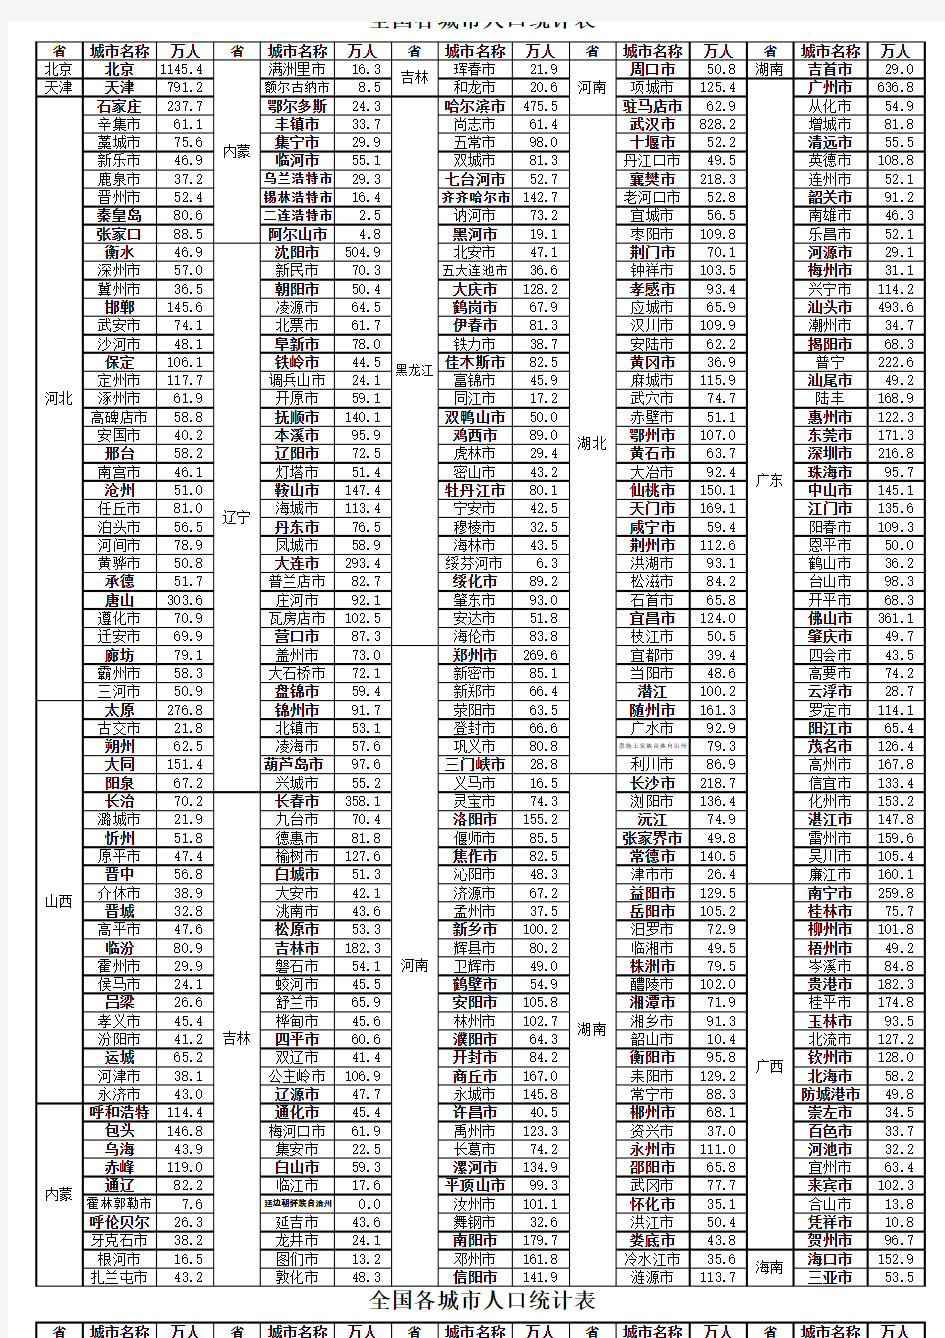 全国各城市人口统计表(截止2013年12月)单页打印版